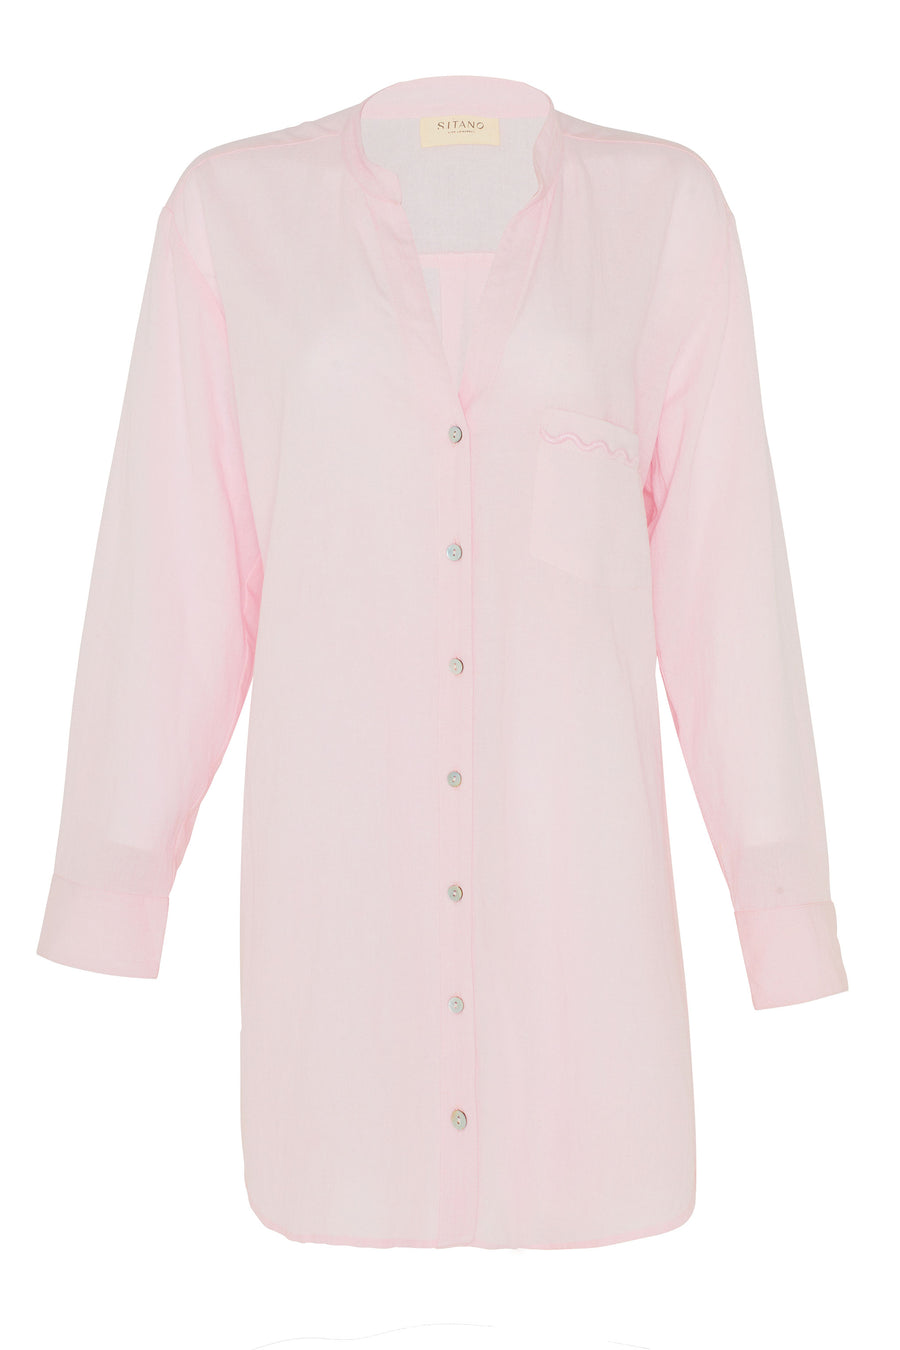 Luna Shirt Dress - Light Pink